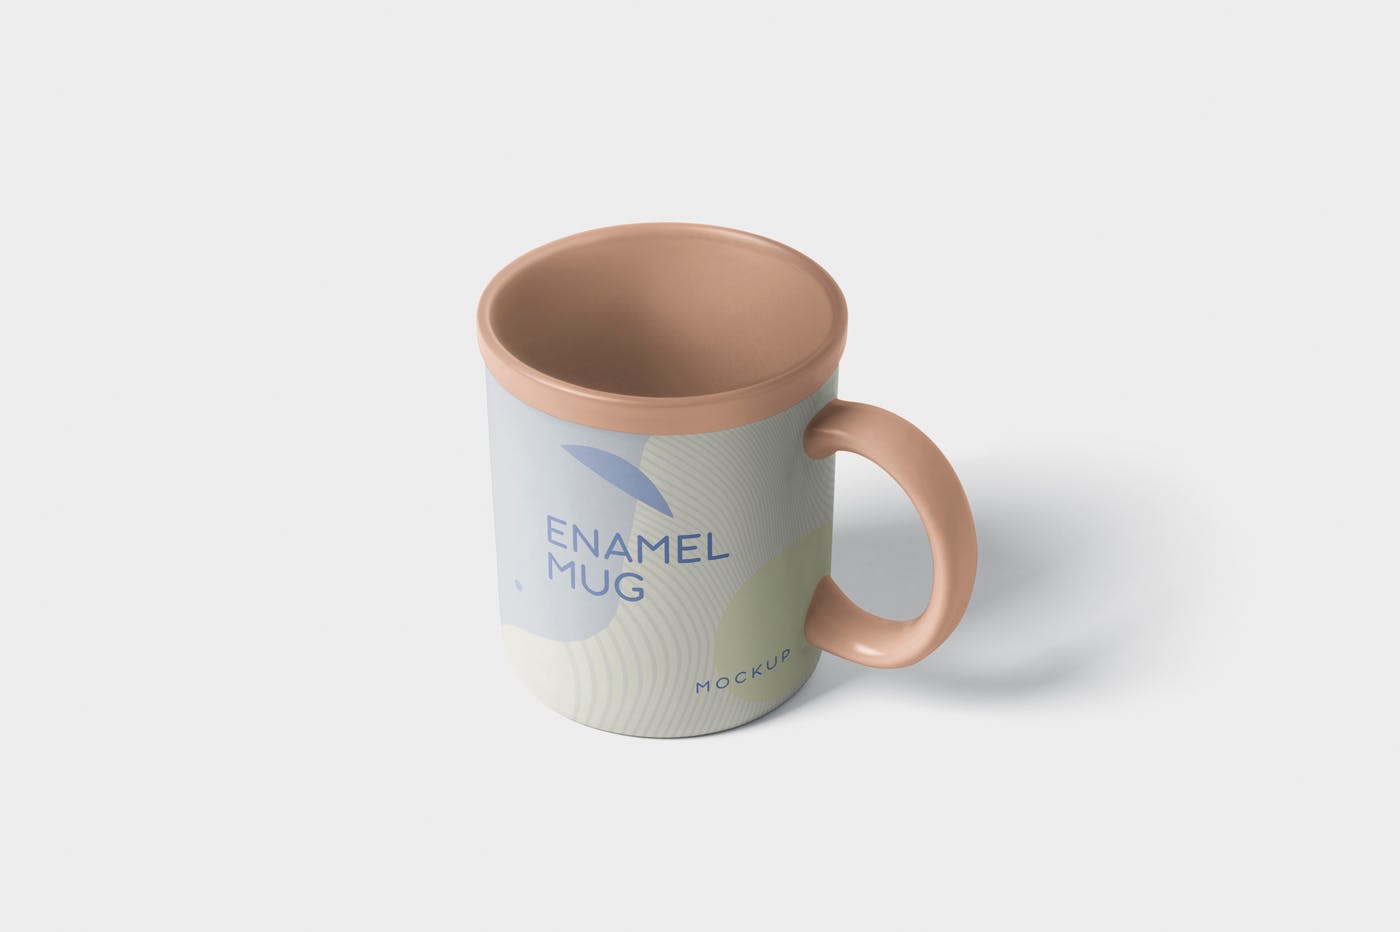 带把手圆形搪瓷杯马克杯图案设计素材中国精选 Round Enamel Mug Mockup With Handle插图(2)